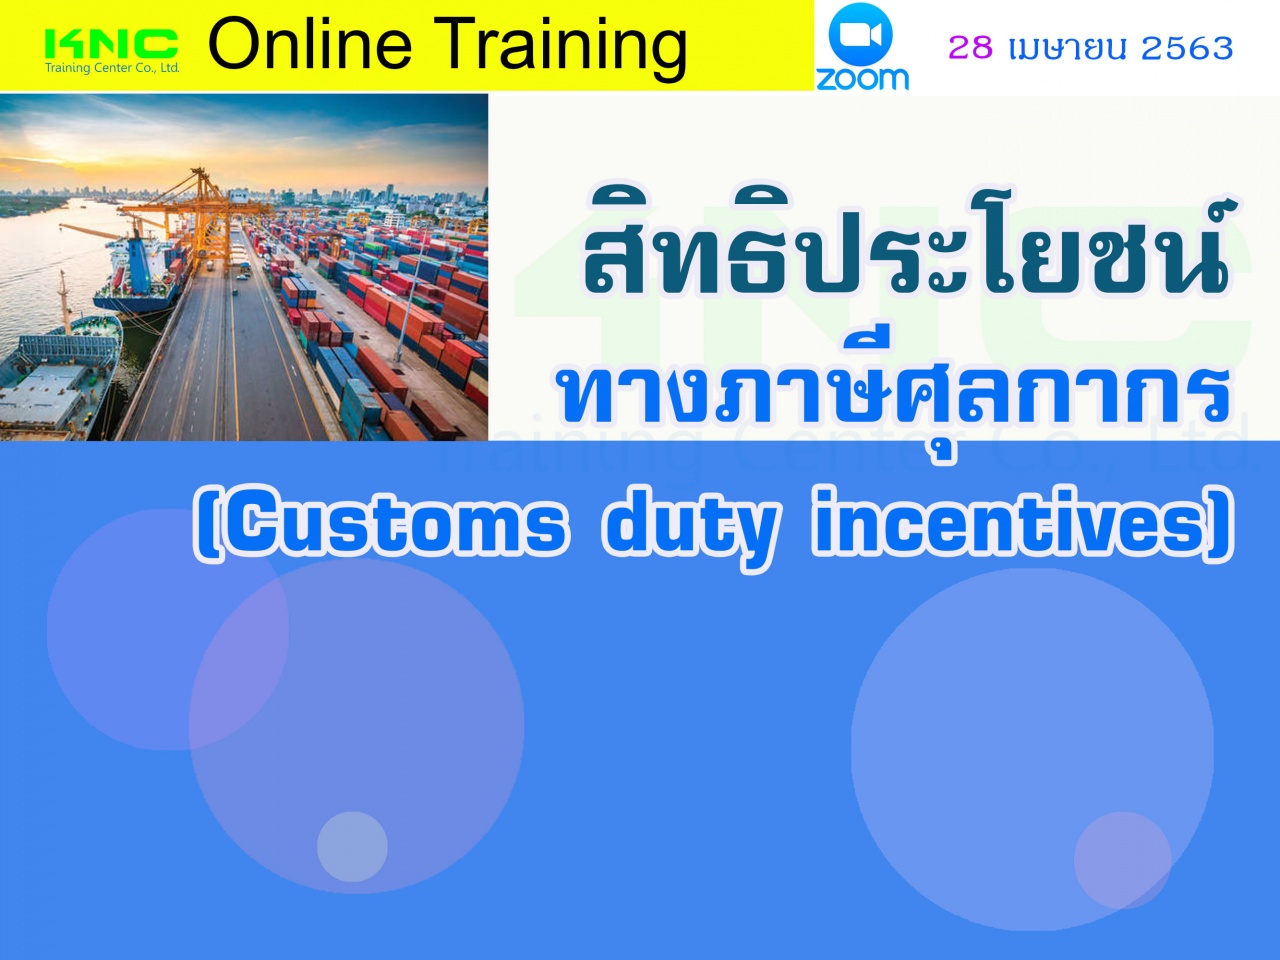 สัมมนาออนไลน์ : สิทธิประโยชน์ทางภาษีศุลกากร (Customs duty incentives)